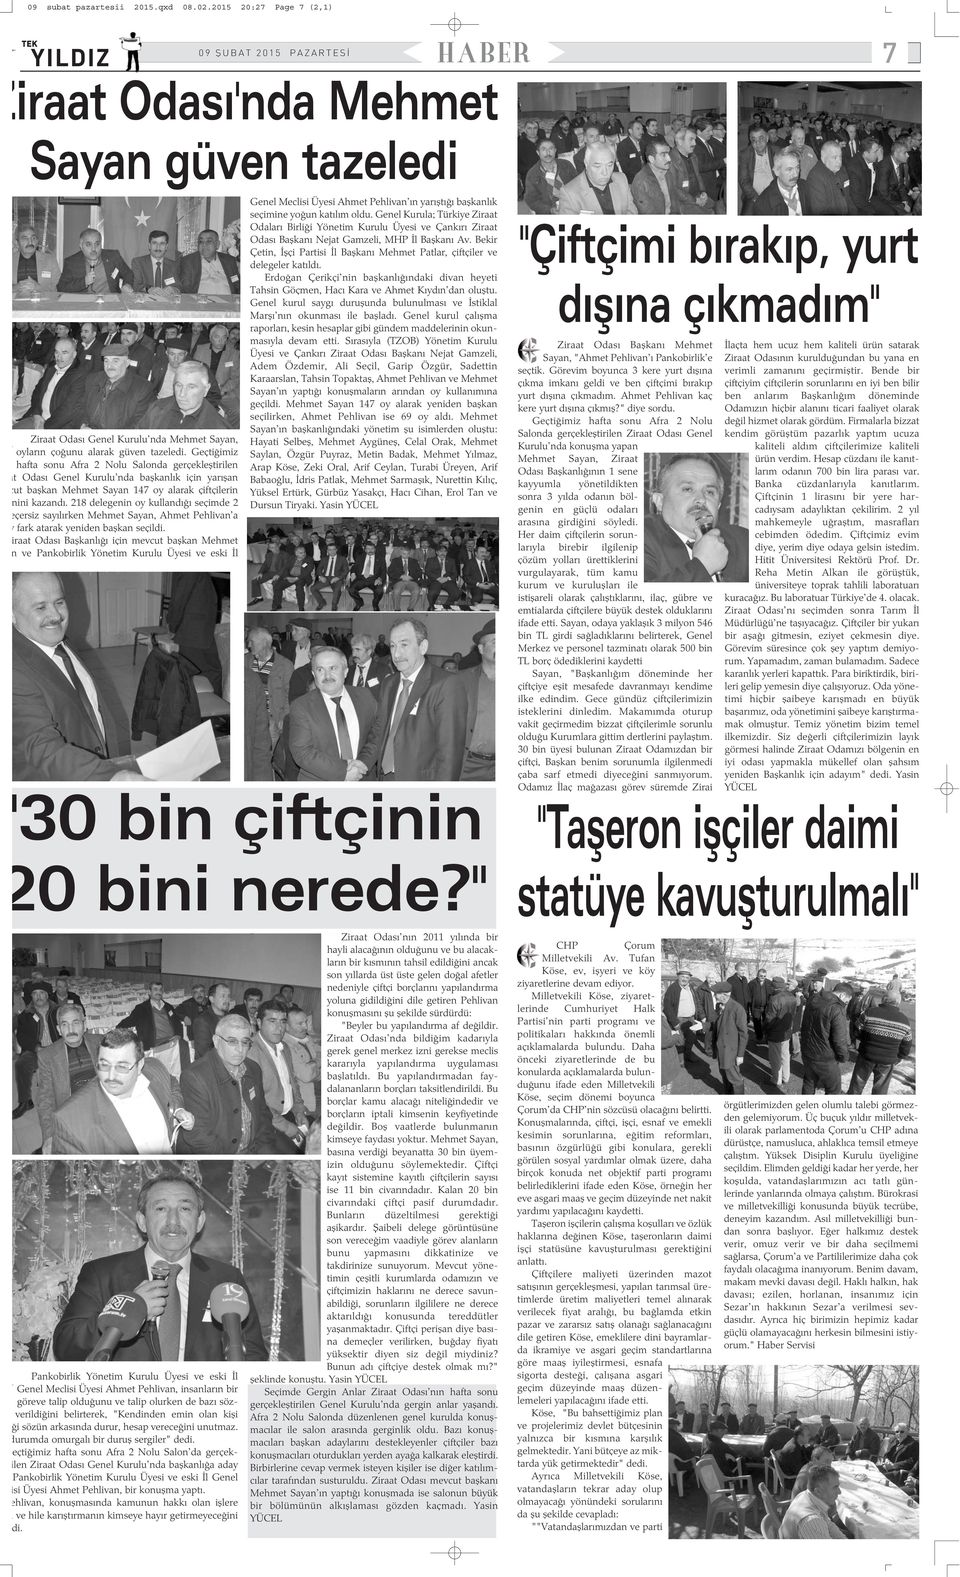 delegenin oy kullandýðý seçimde eçersiz sayýlýrken Mehmet Sayan, Ahmet Pehlivan'a y fark atarak yeniden baþkan seçildi.